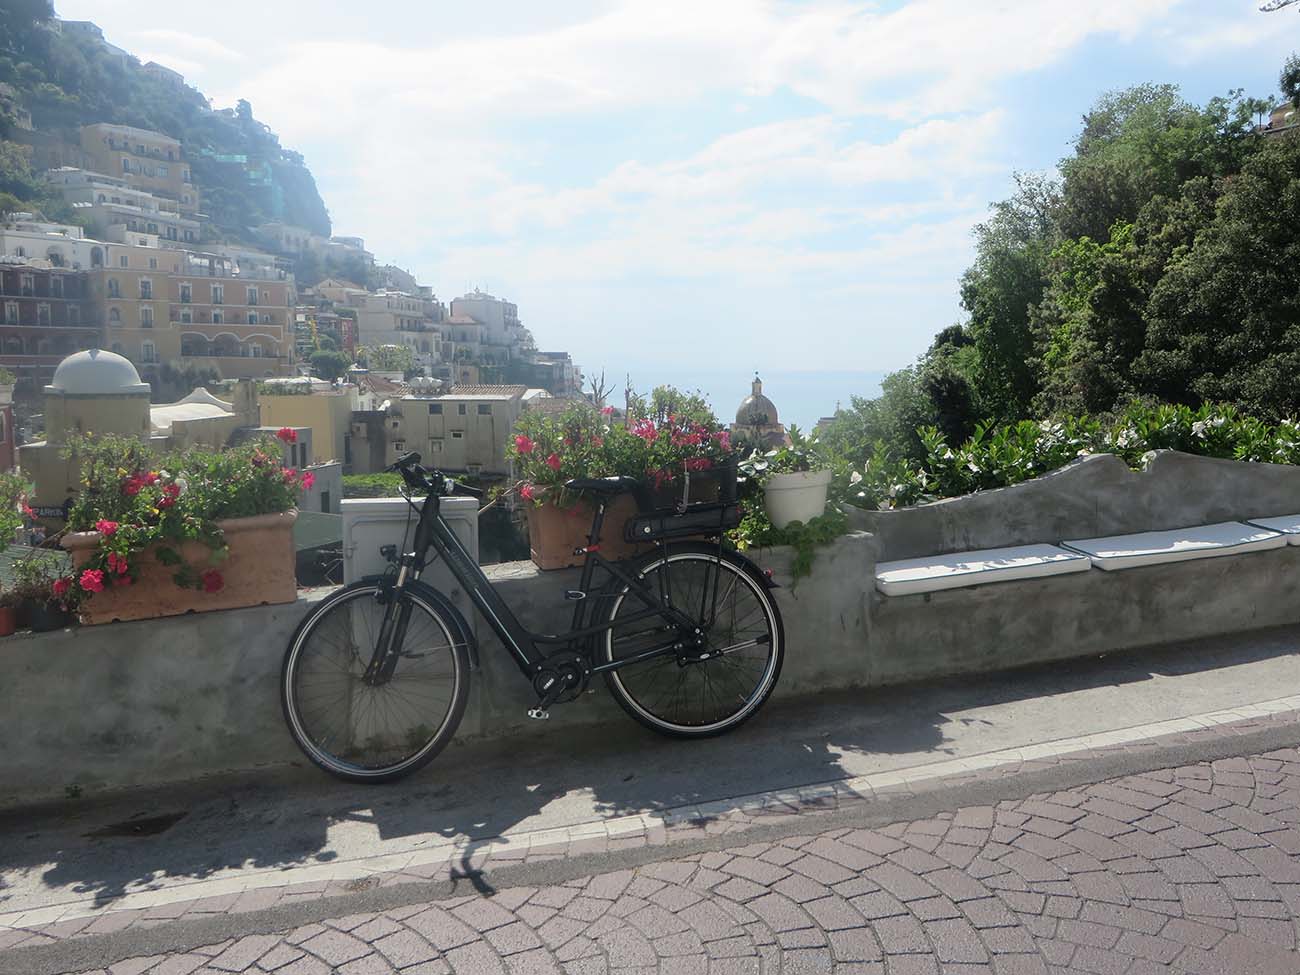 Mediterranean Cruise: Amalfi Coast and Capri 